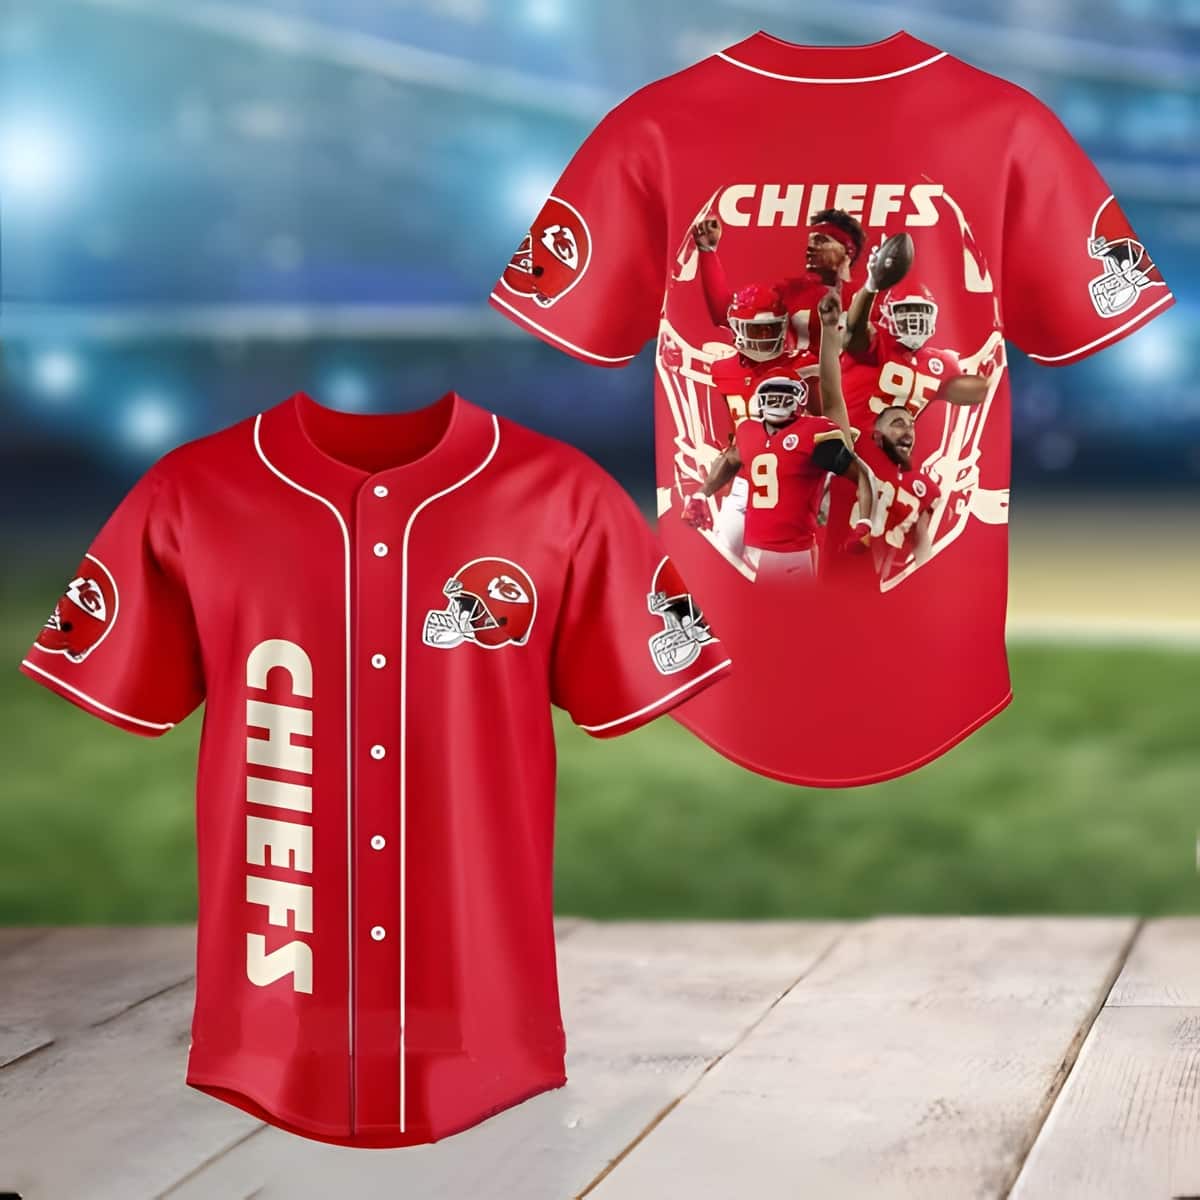 chiefs baseball shirt